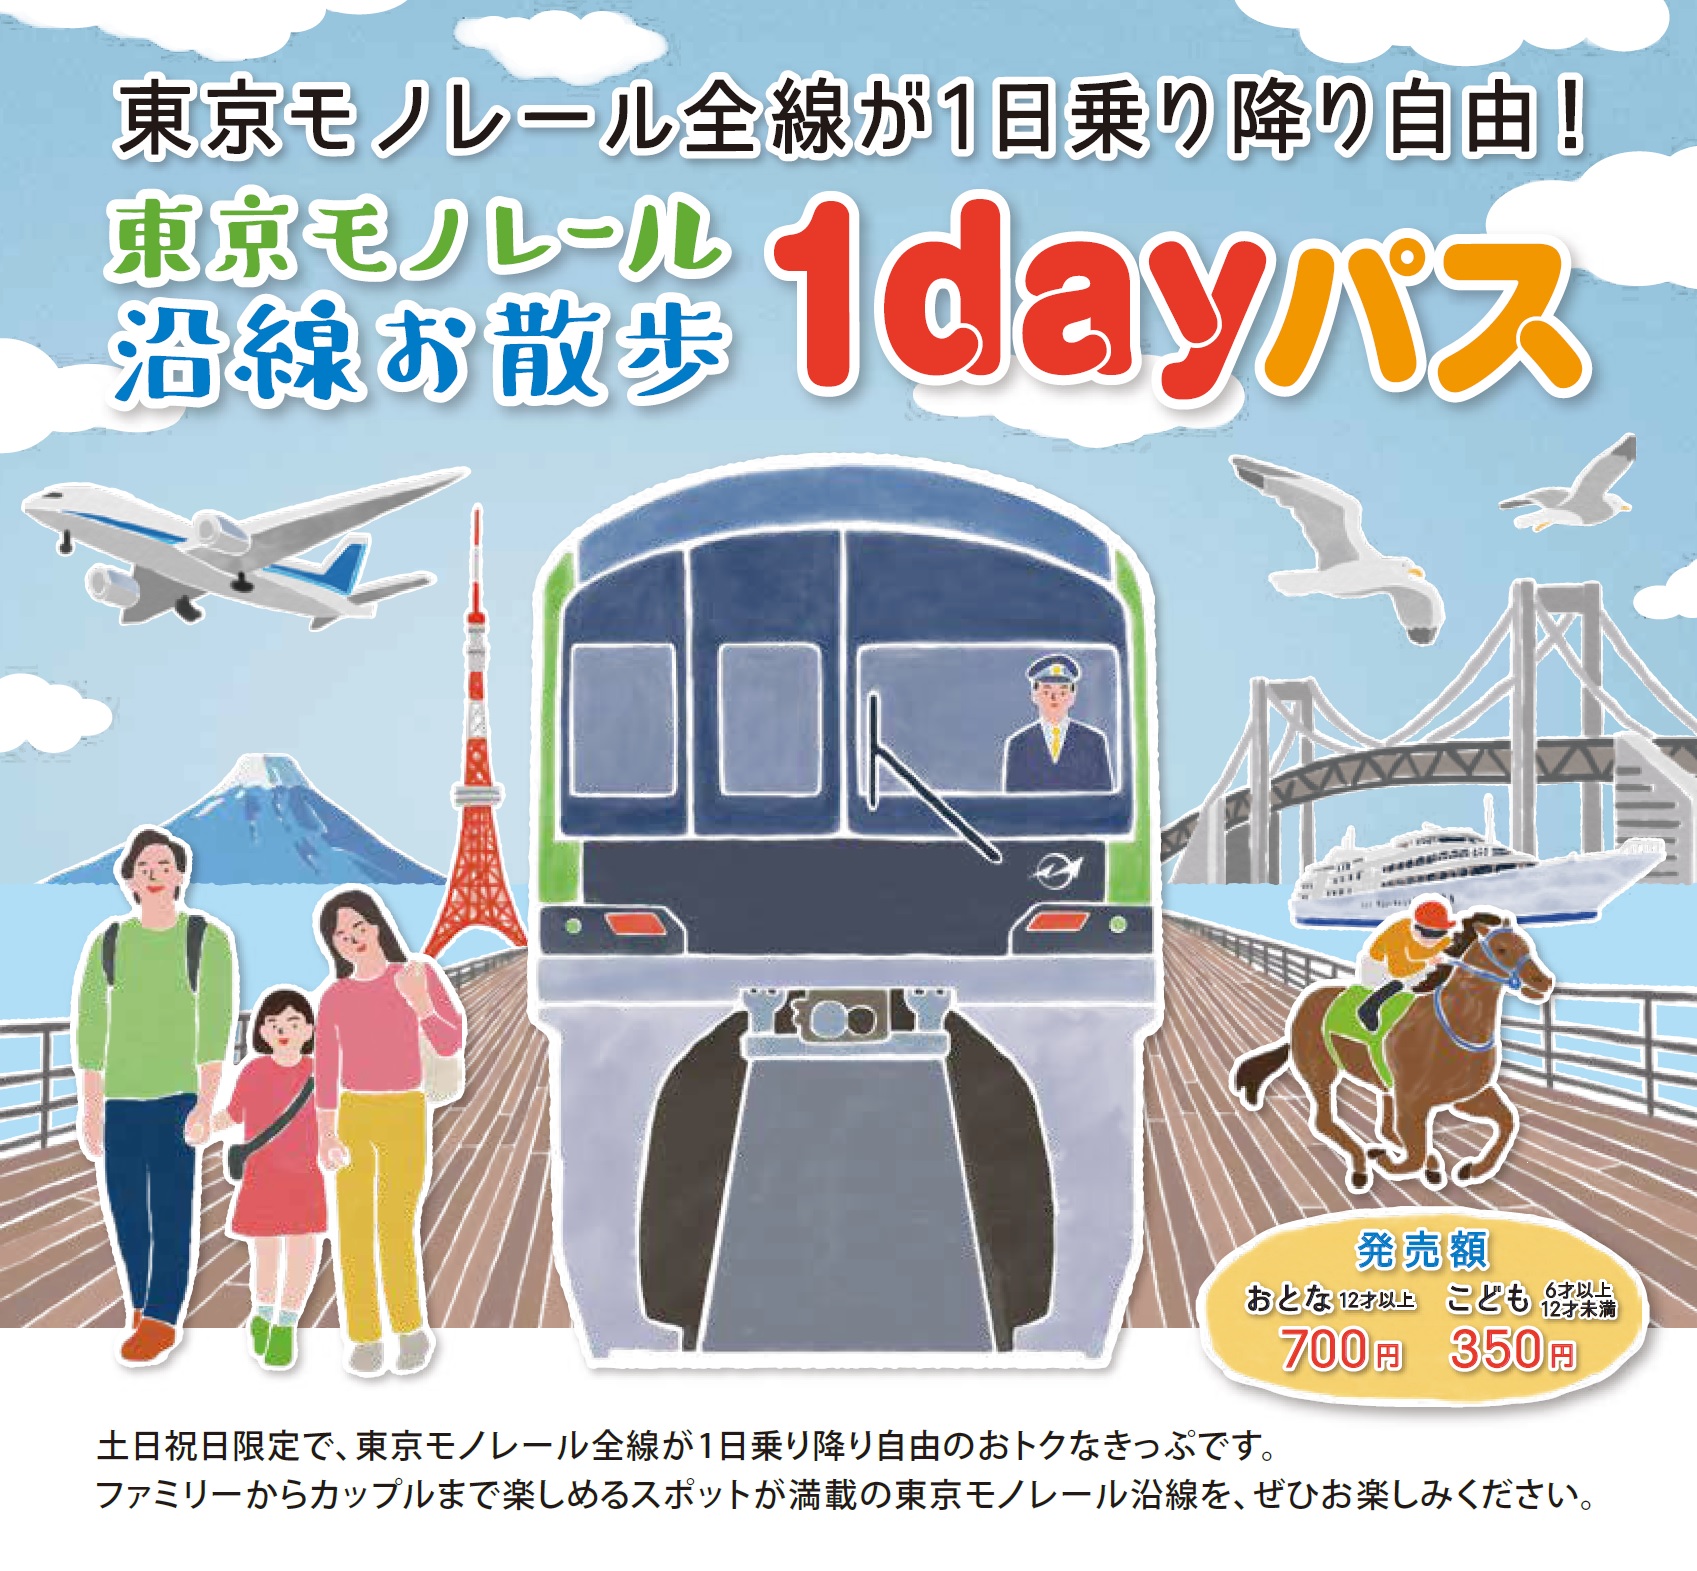 東京單軌電車沿線散步1日周遊券